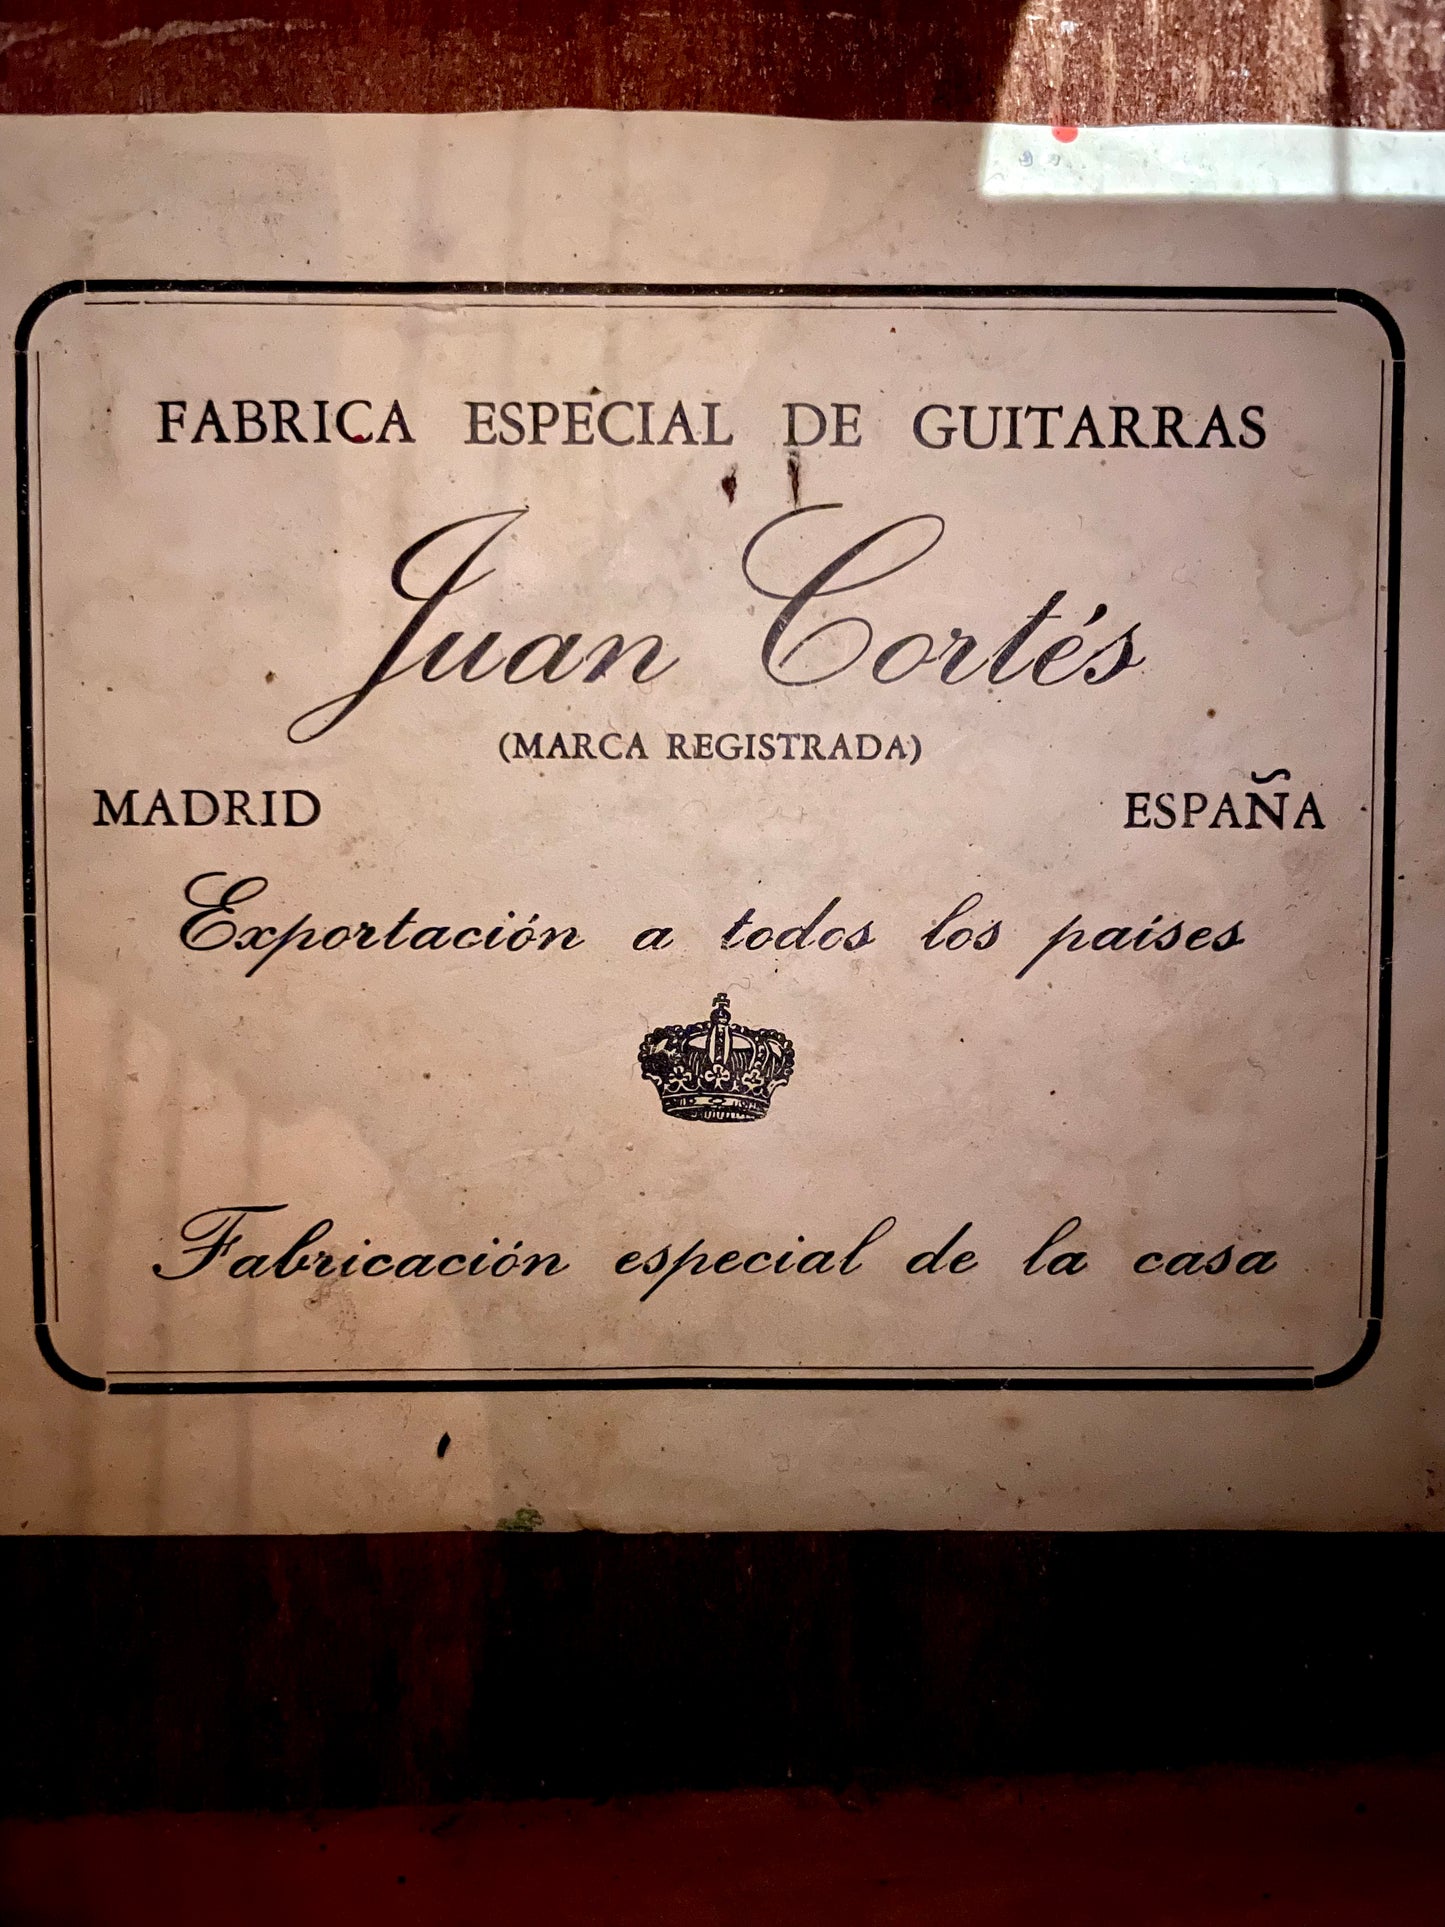 Juan Cortes – Madrid, Spain c. 1970